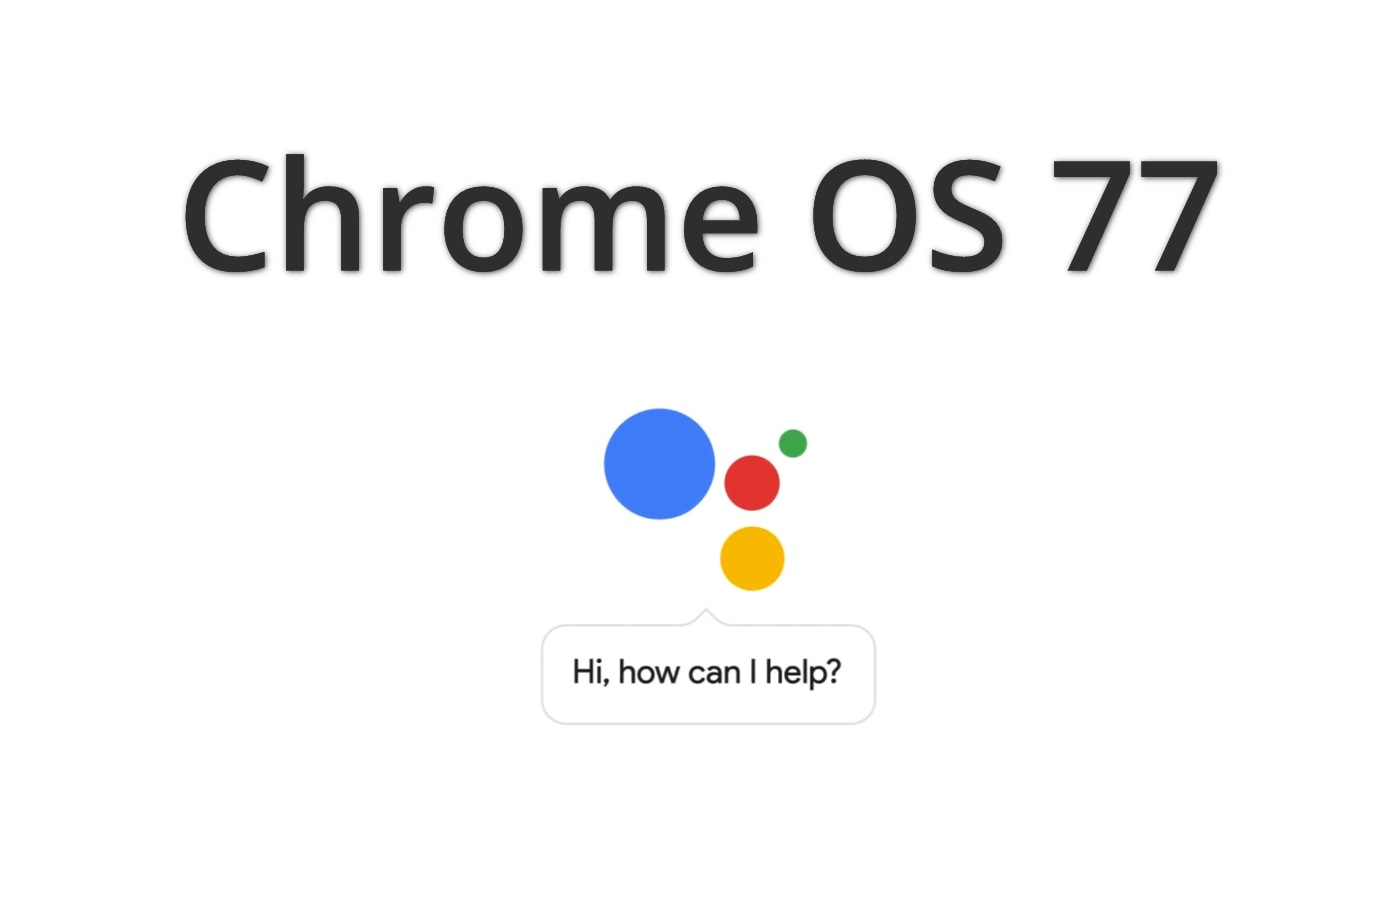 Chrome OS گوگل سیستم عامل سیستم عامل Chrome OS گوگل اسیستنت